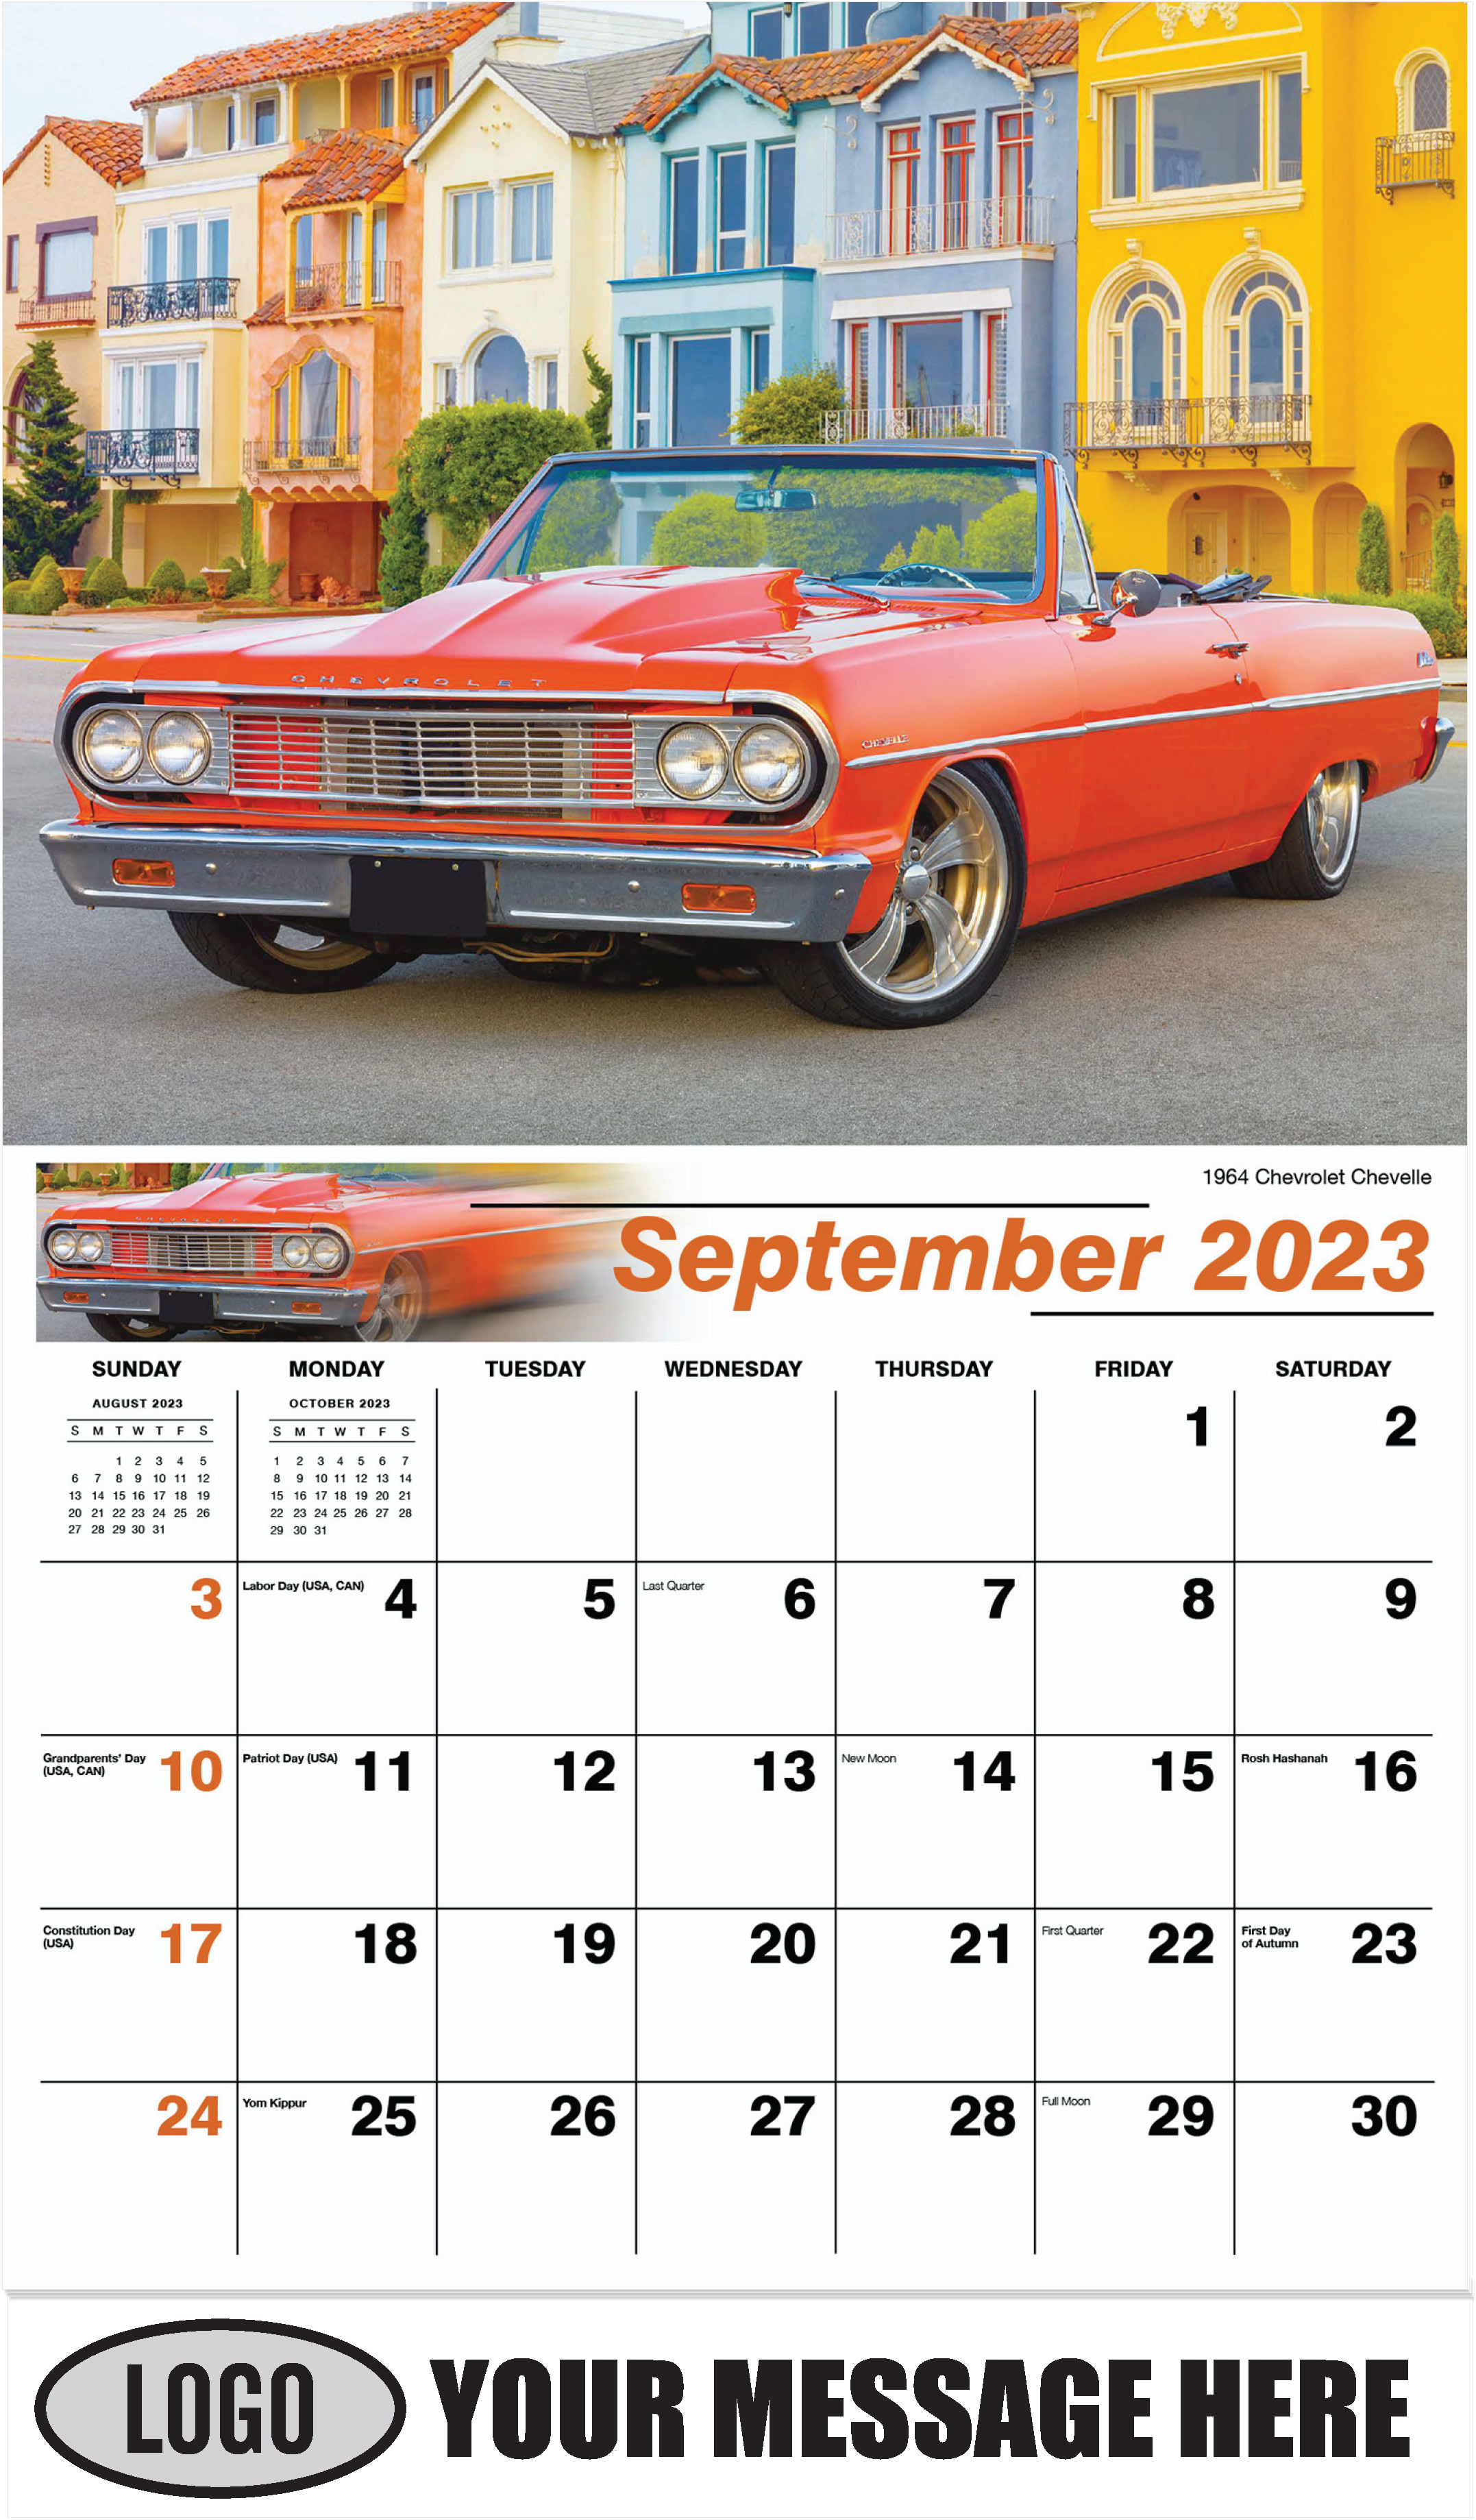 1964 Chevrolet Chevelle - September - GM Classics 2023 Promotional Calendar